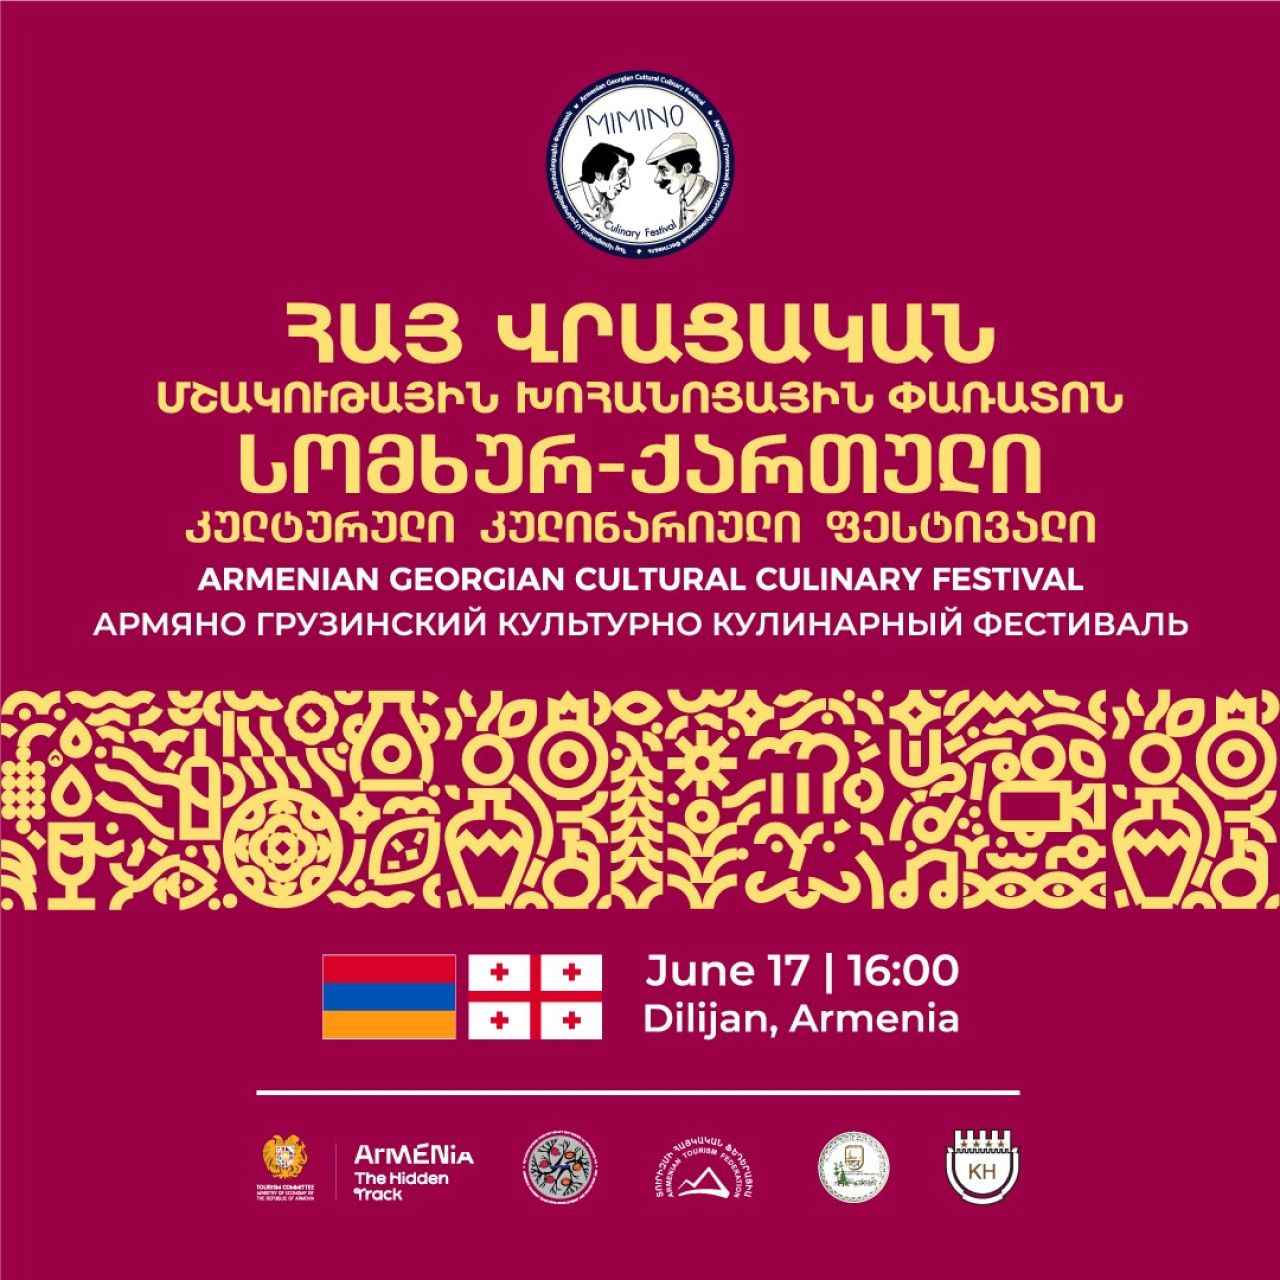 Դիլիջանում կանցկացվի «Միմինո» հայ–վրացական մշակութային խոհարարական փառատոնը